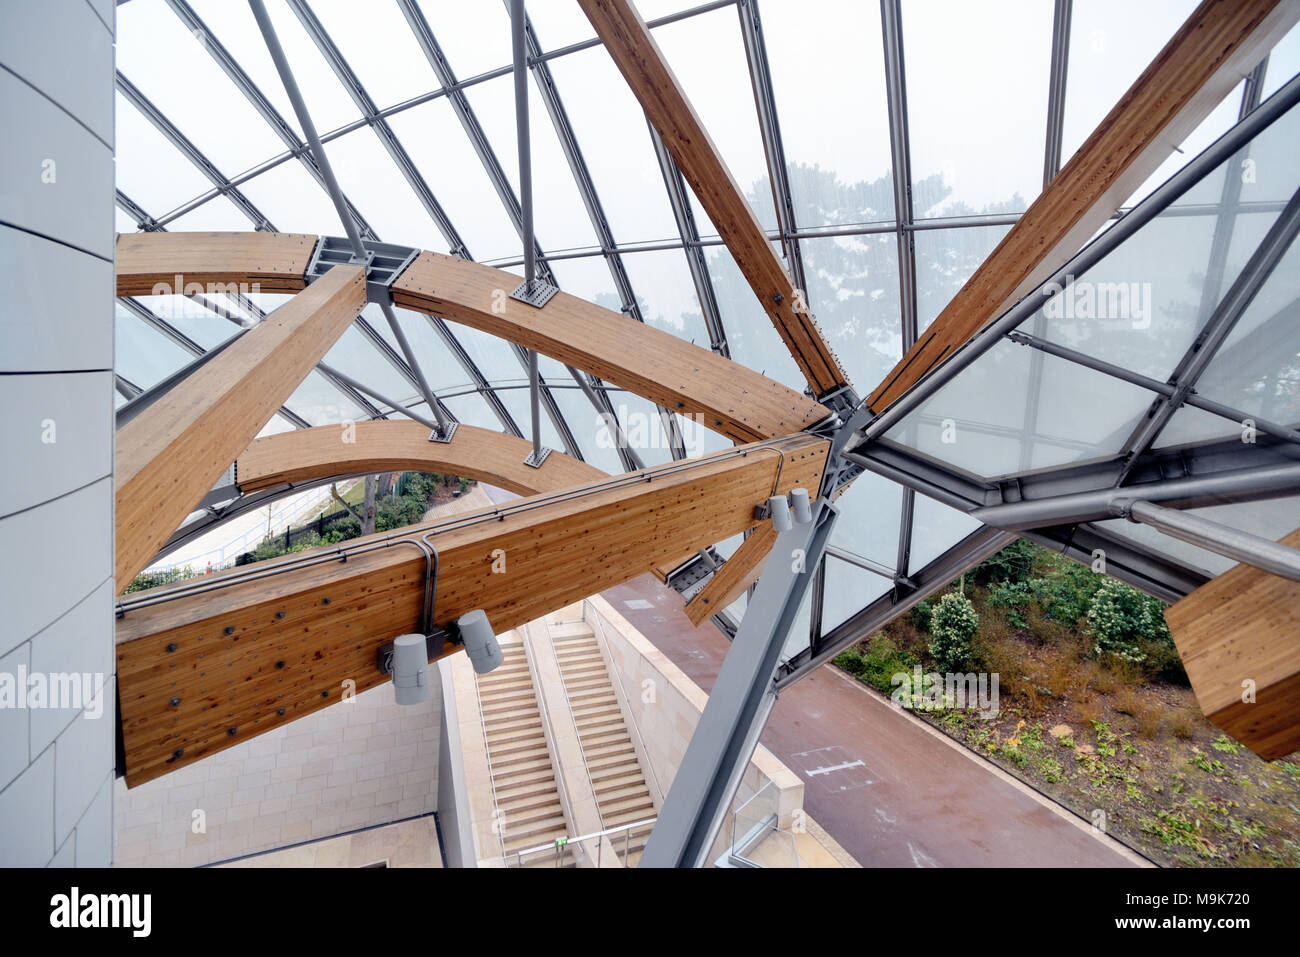 Metal y techo de madera estenosis o marco, Fundación Louis Vuitton Art Museum & Cultural Center (2006-14) fue diseñado por Frank Gehry, París, Francia Foto de stock